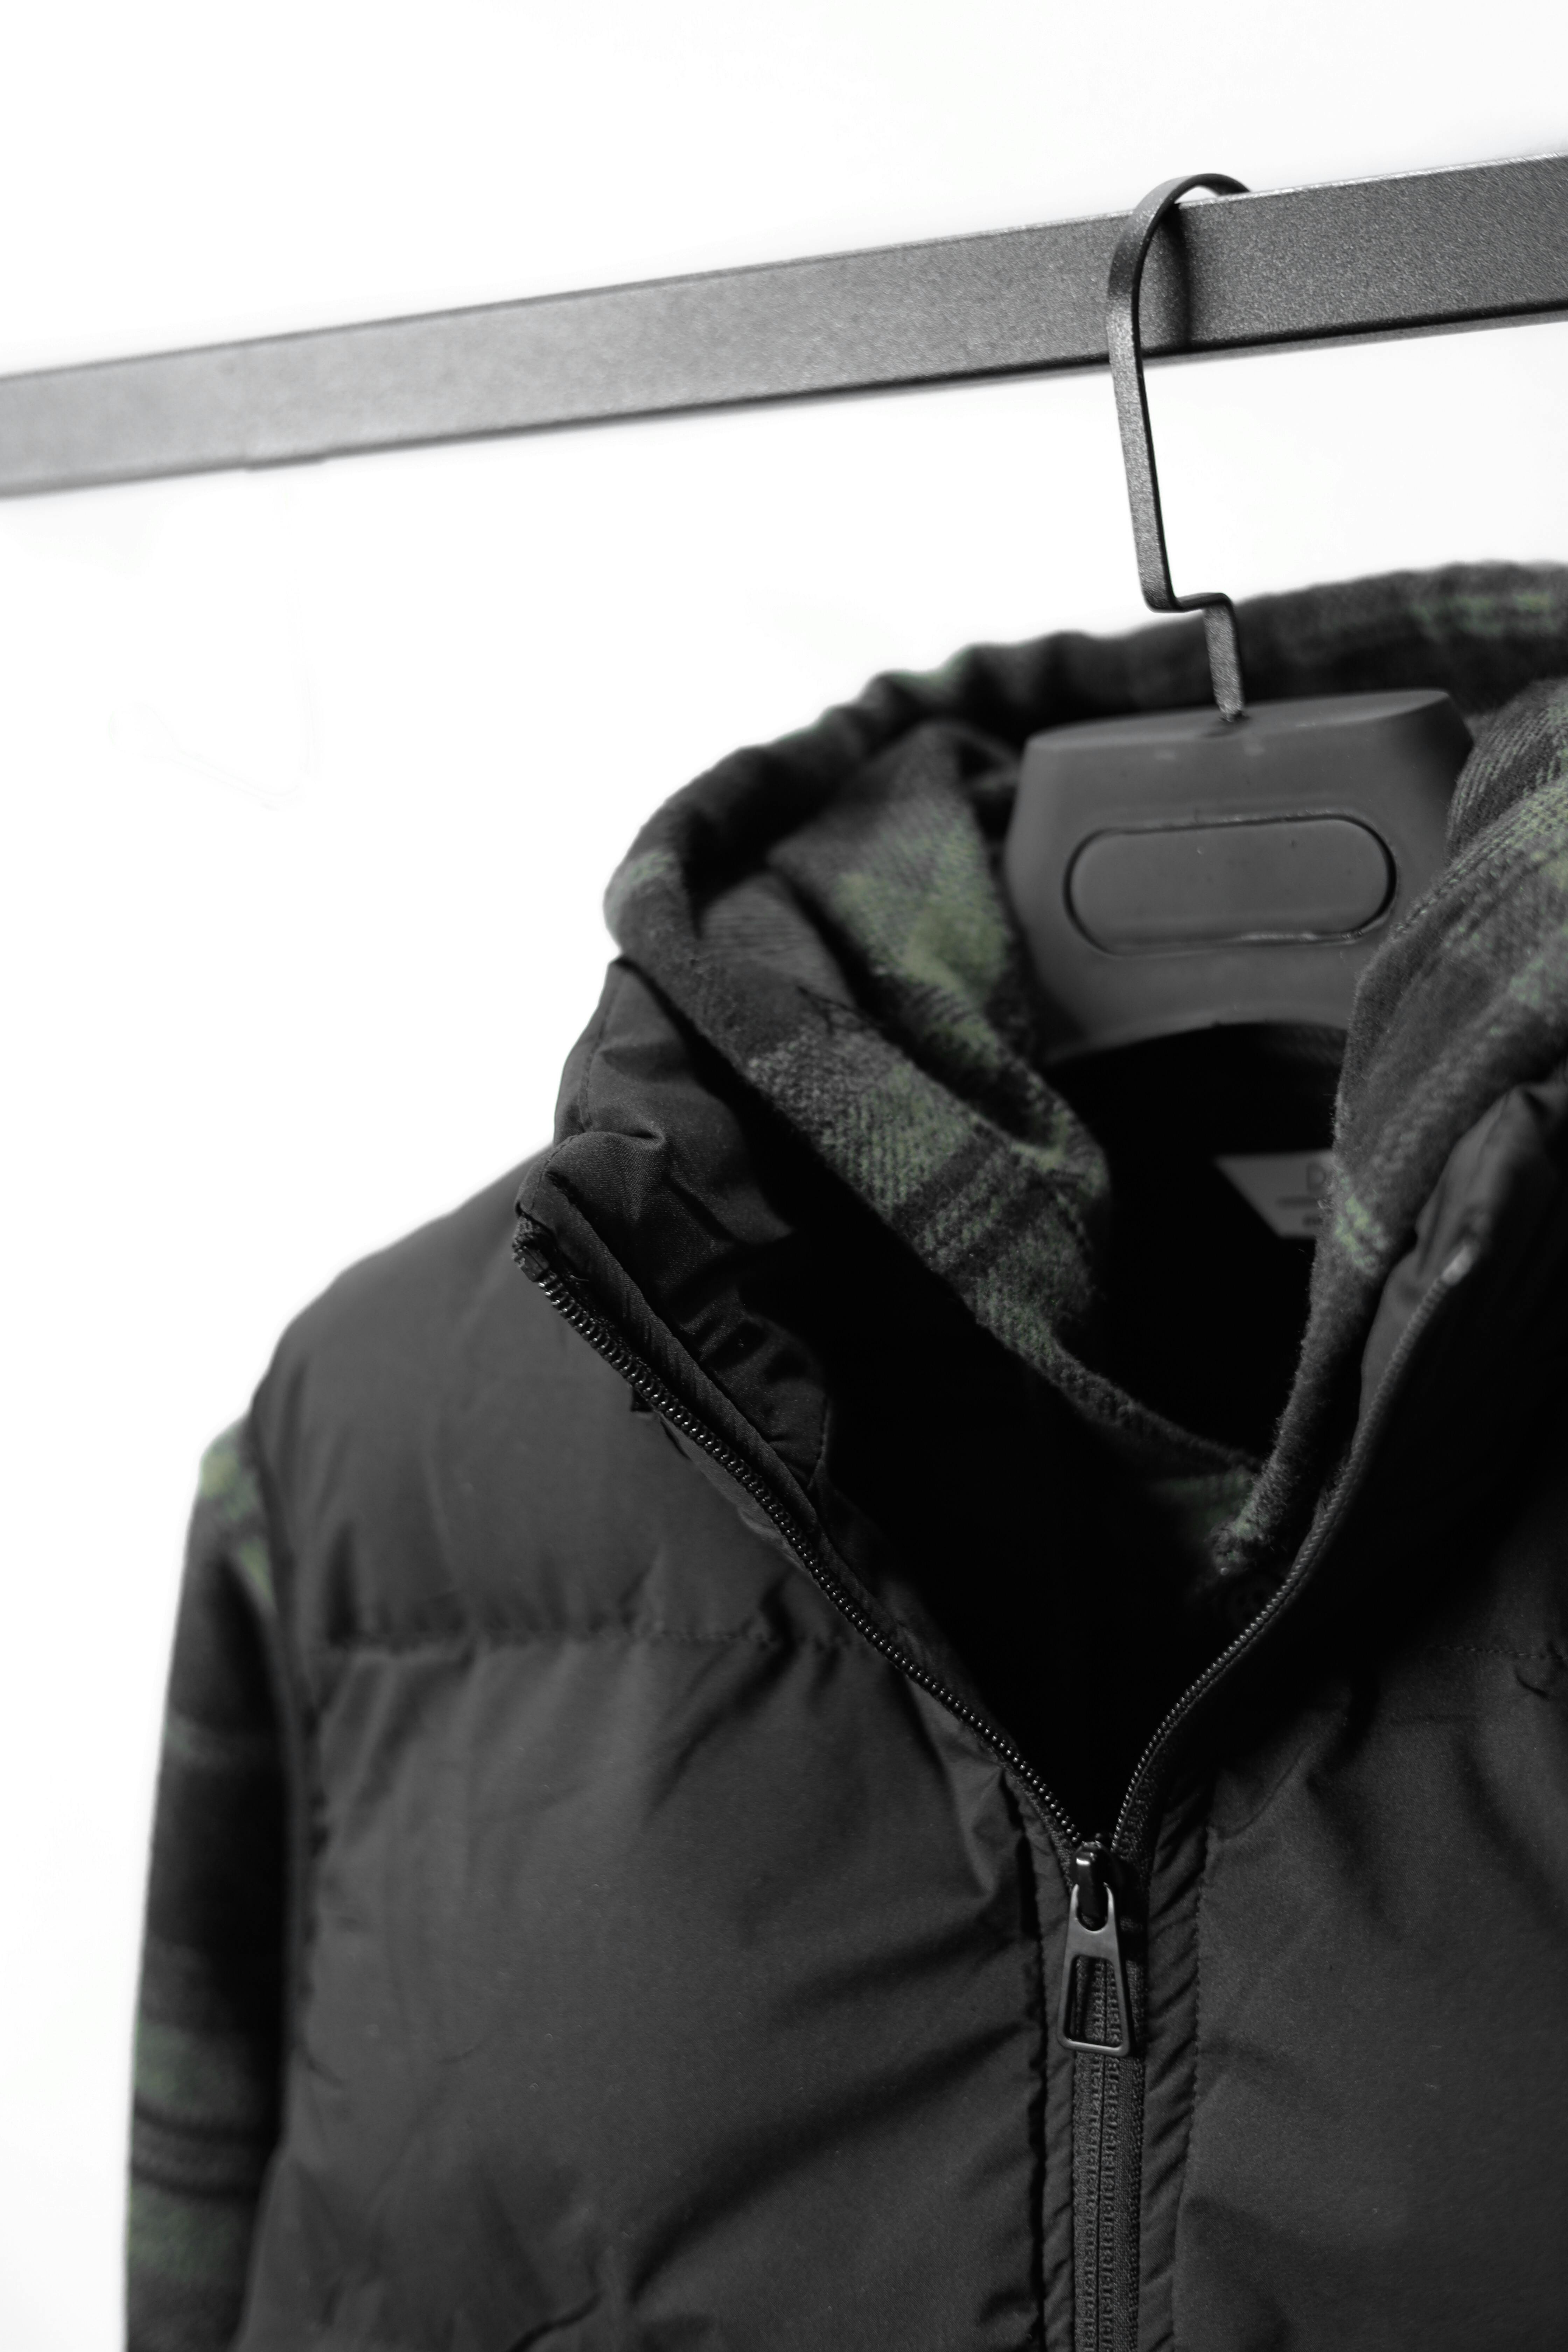 Jacket on a hanger | Source: Pexels